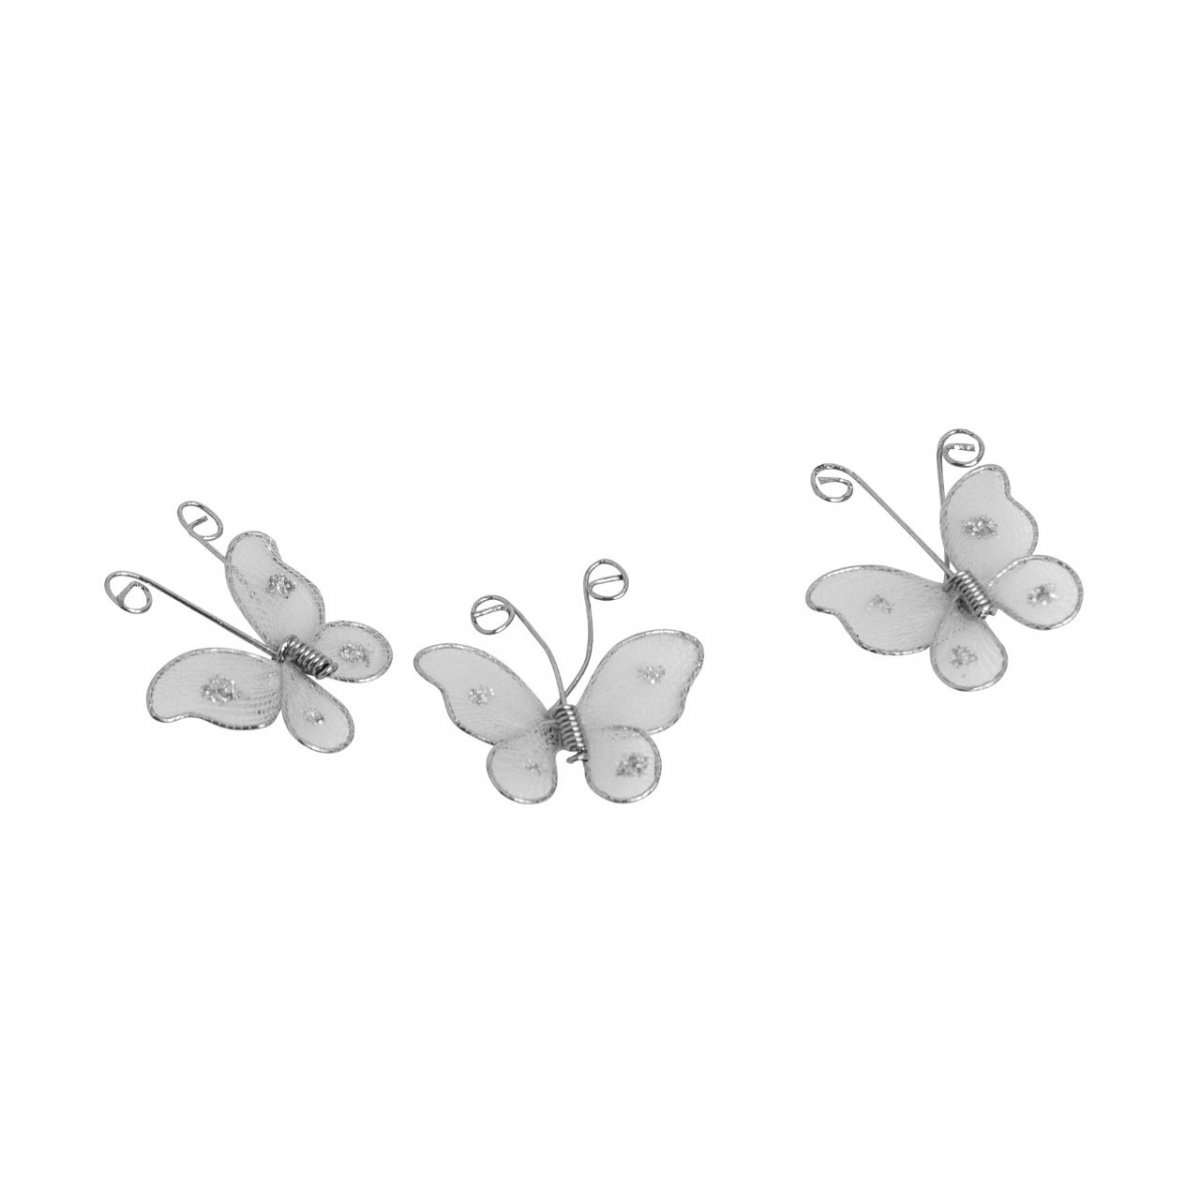 Petits papillons blancs 26 x 24 mm x 8 pièces